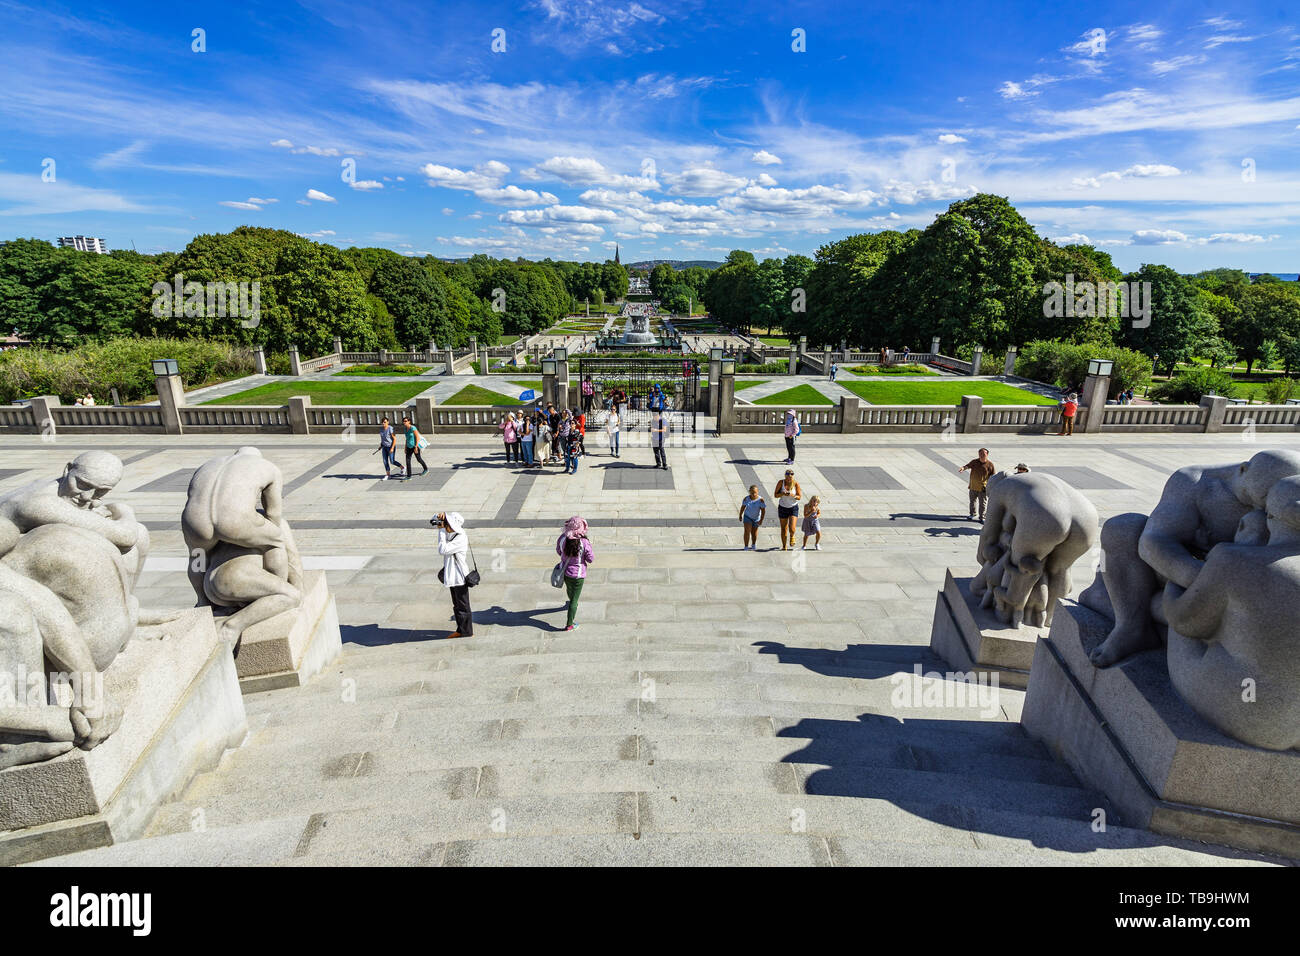 Oslo è il parco Vigeland è il più grande parco della scultura in tutto il mondo da un unico artista con 212 statue di scultore norvegese Gustav Vigeland, Norvegia Foto Stock